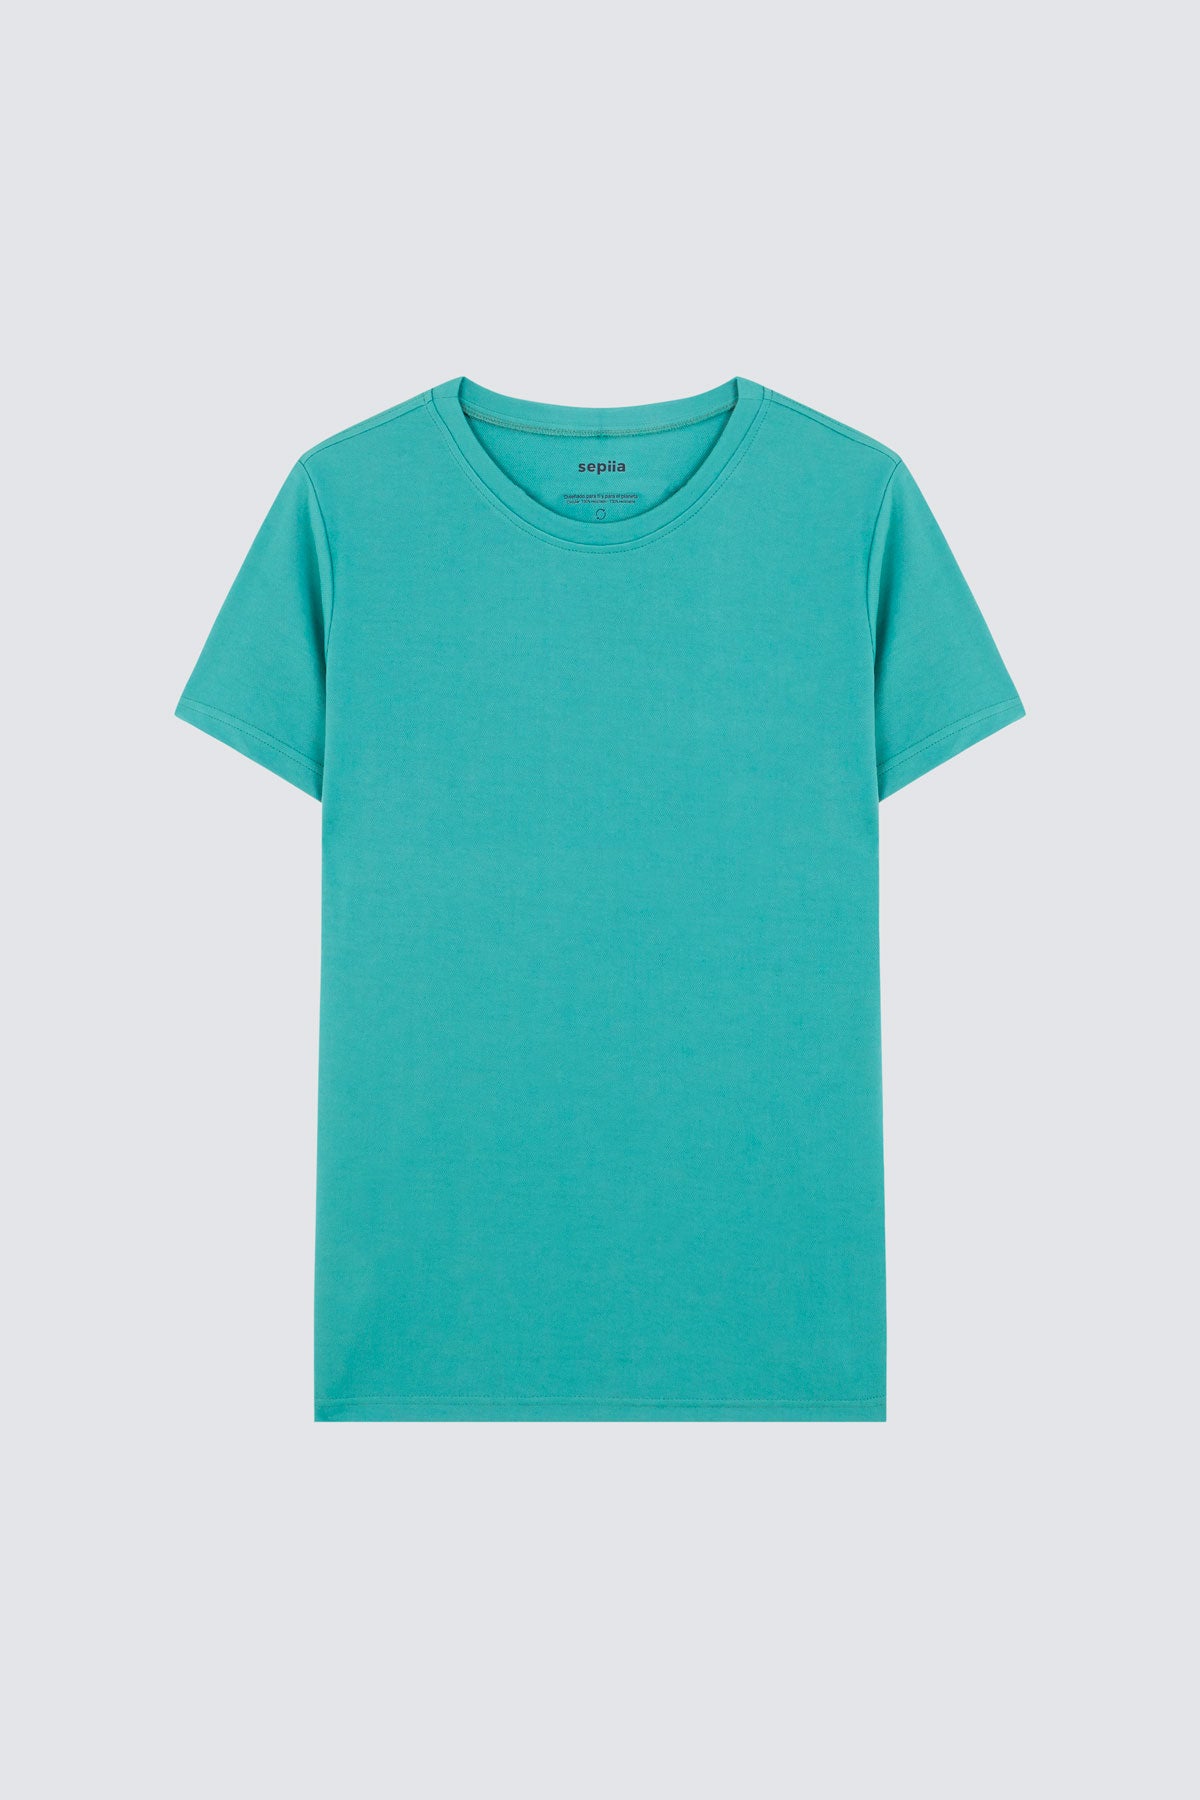 Camiseta de hombre verde clorofila de Sepiia, estilo y versatilidad en una prenda resistente. Foto prenda en plano